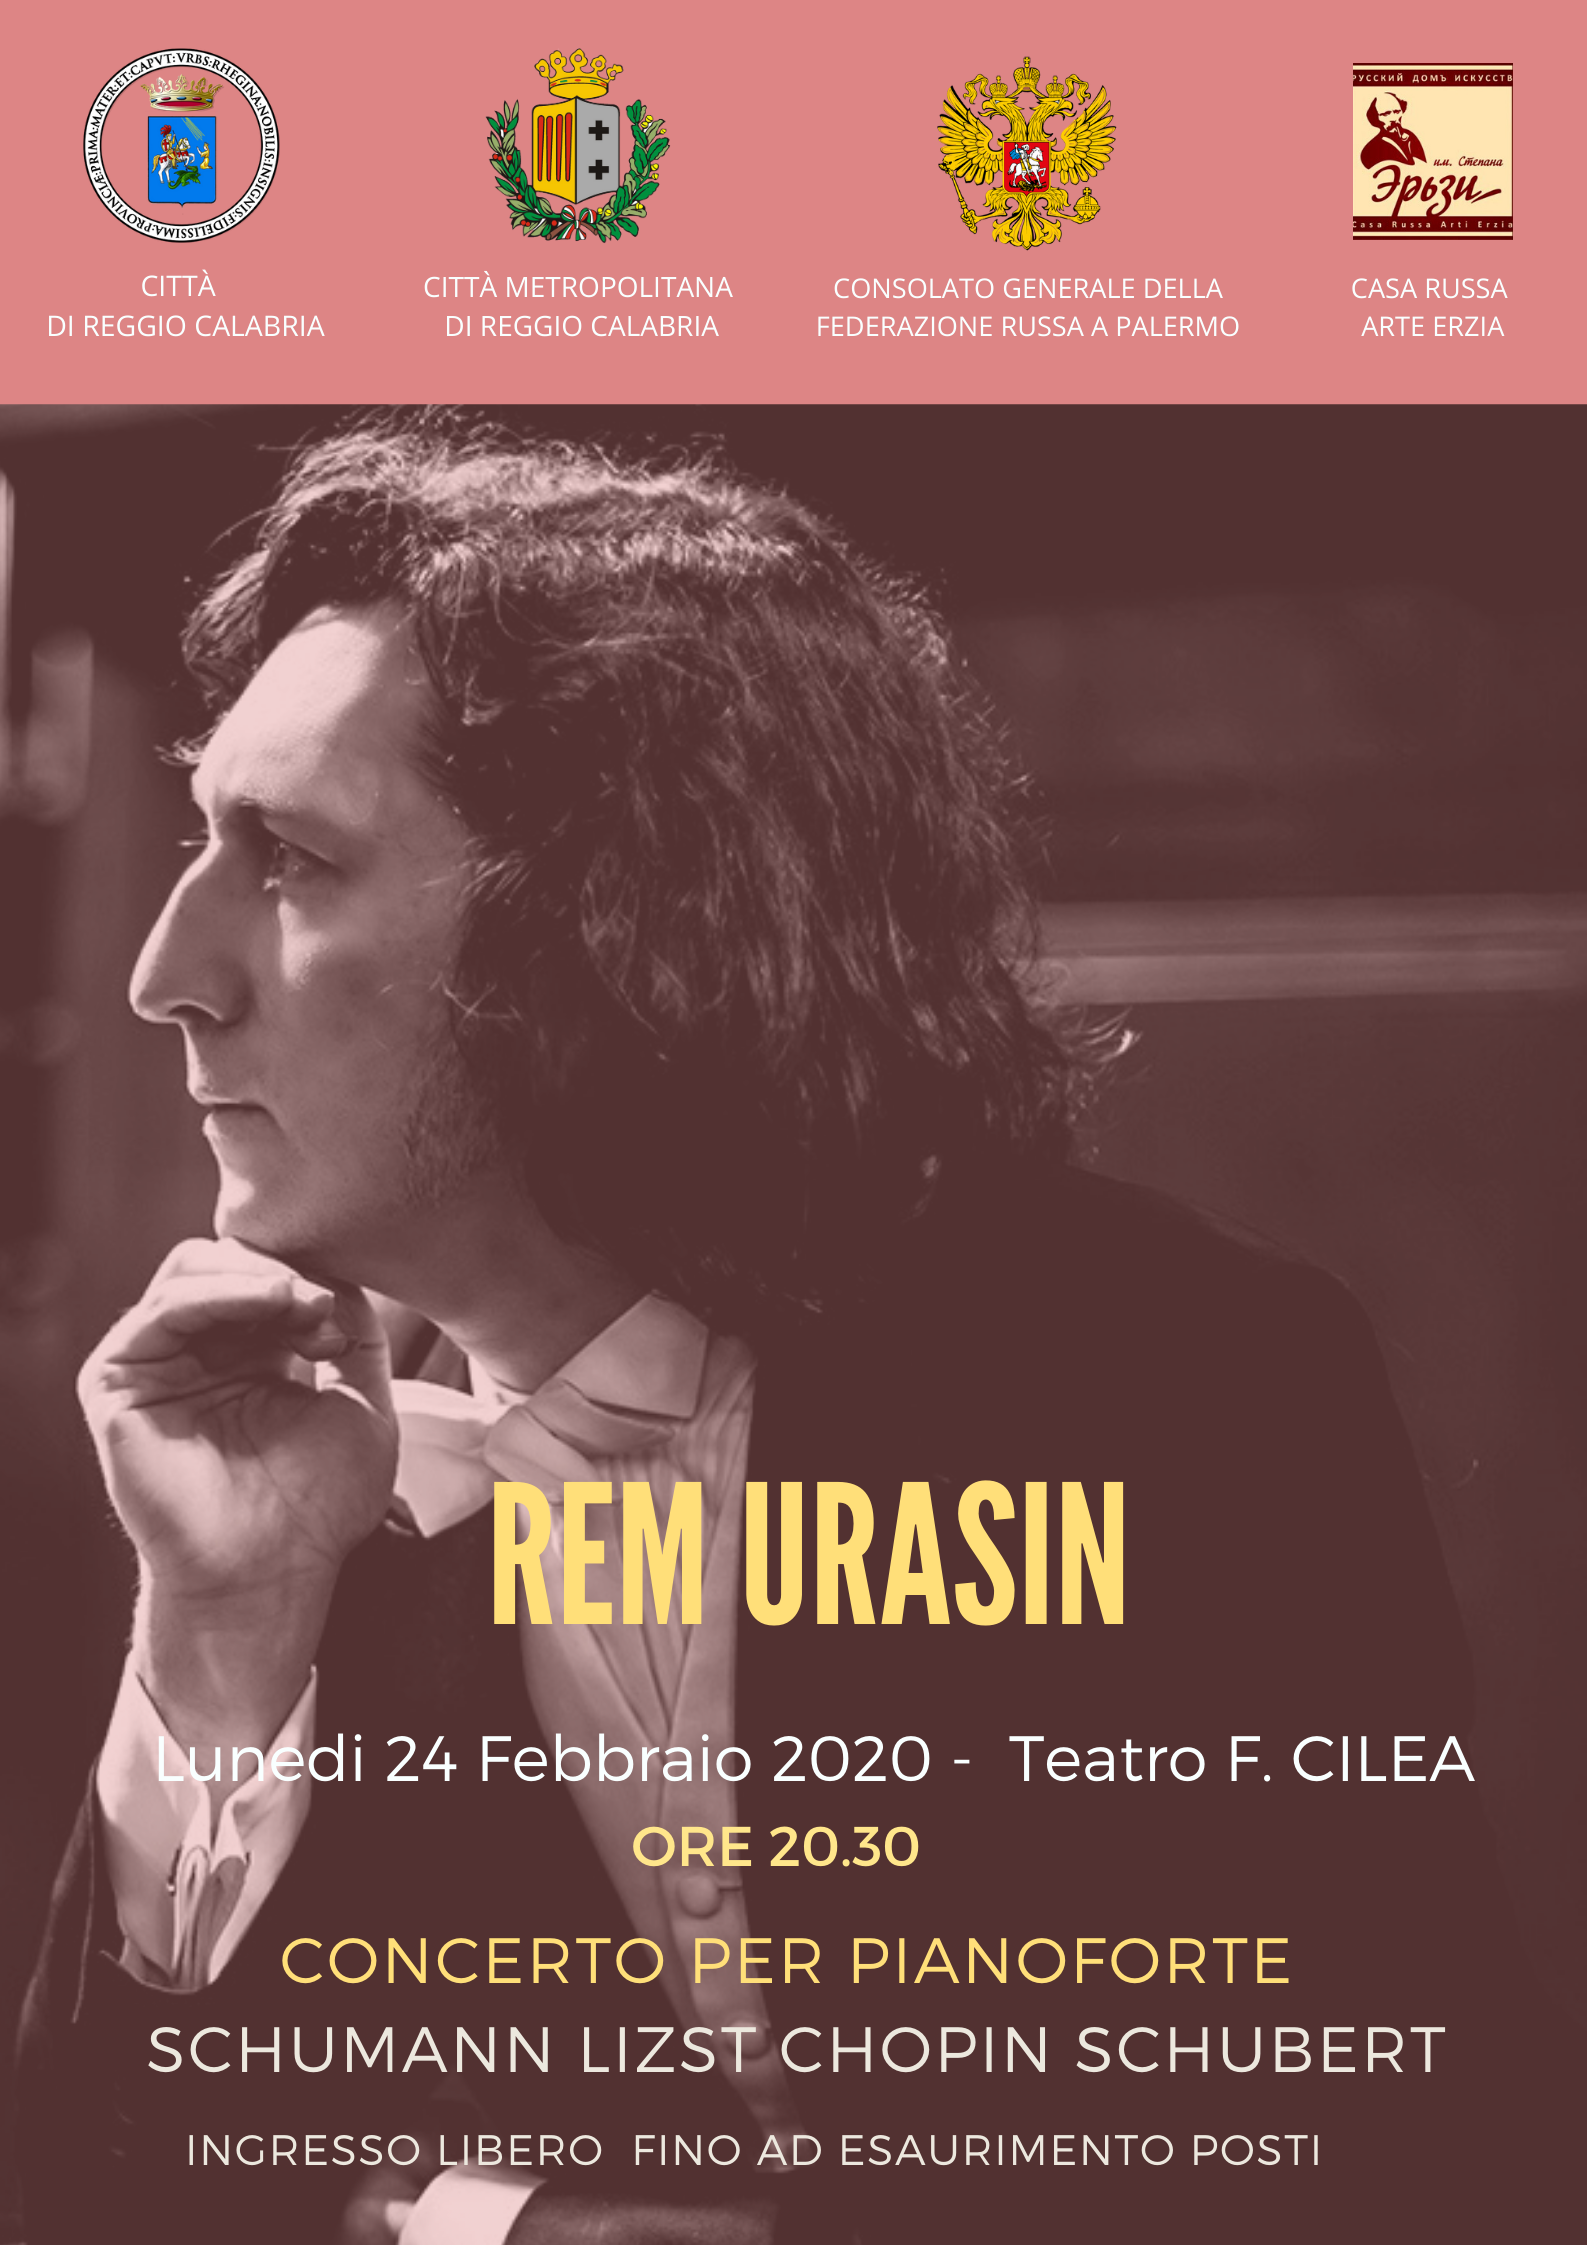 Teatro Cilea, stasera il concerto del pianista Rem Urasin